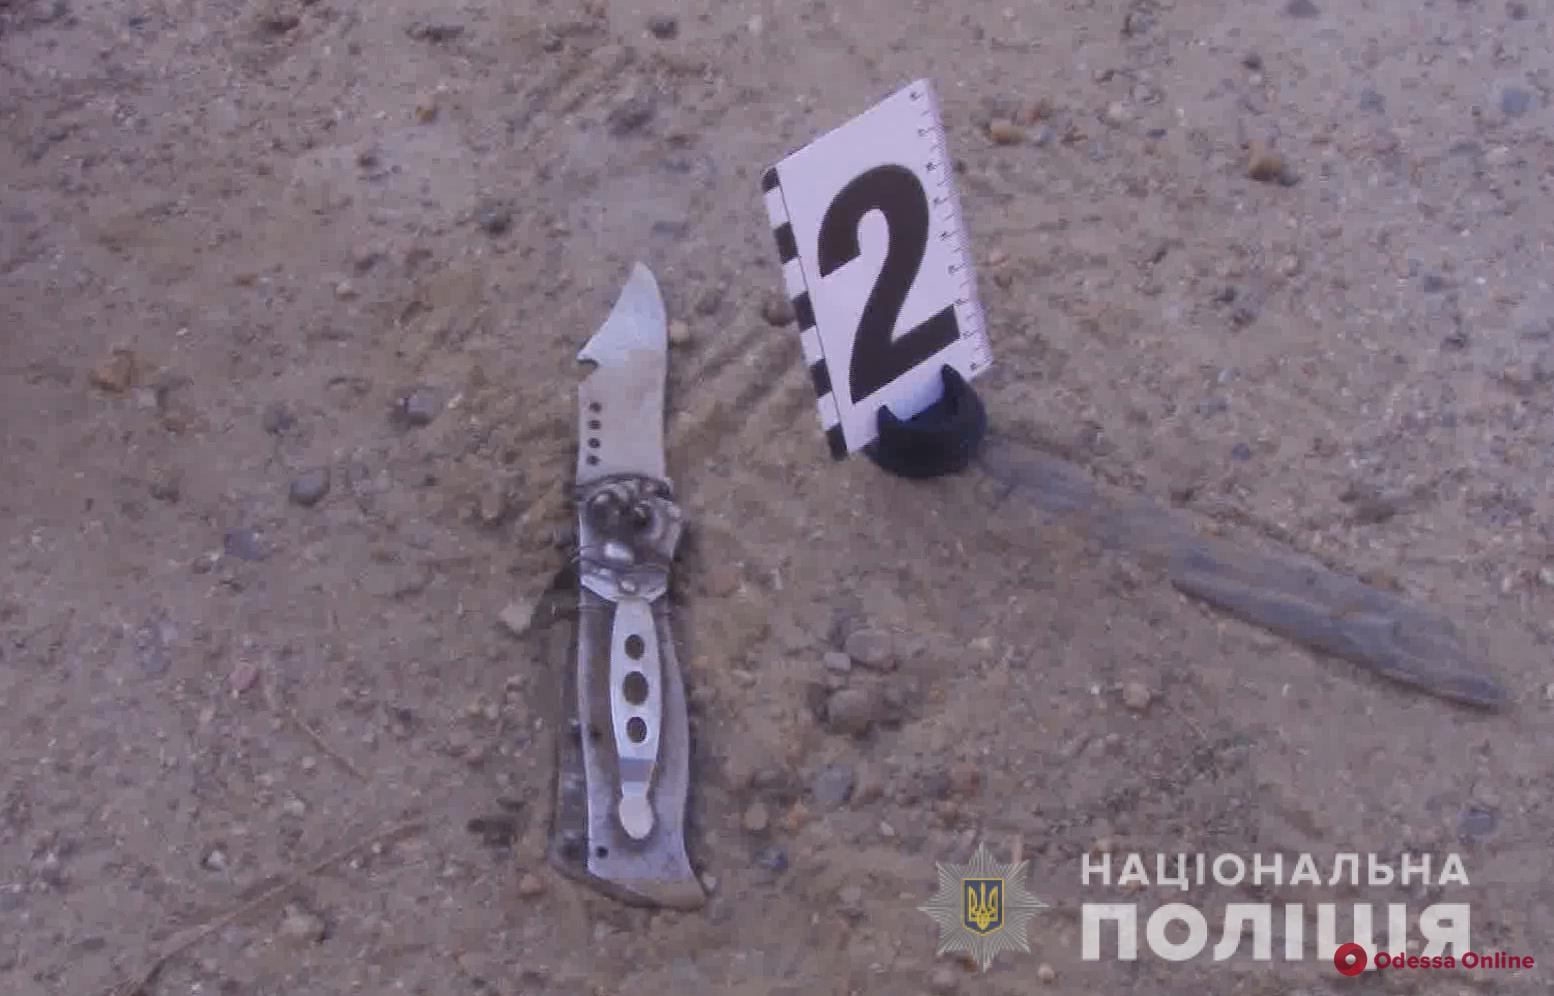 Одесса: застреленный при задержании преступник зарезал на кладбище преподавателя вуза (видео)